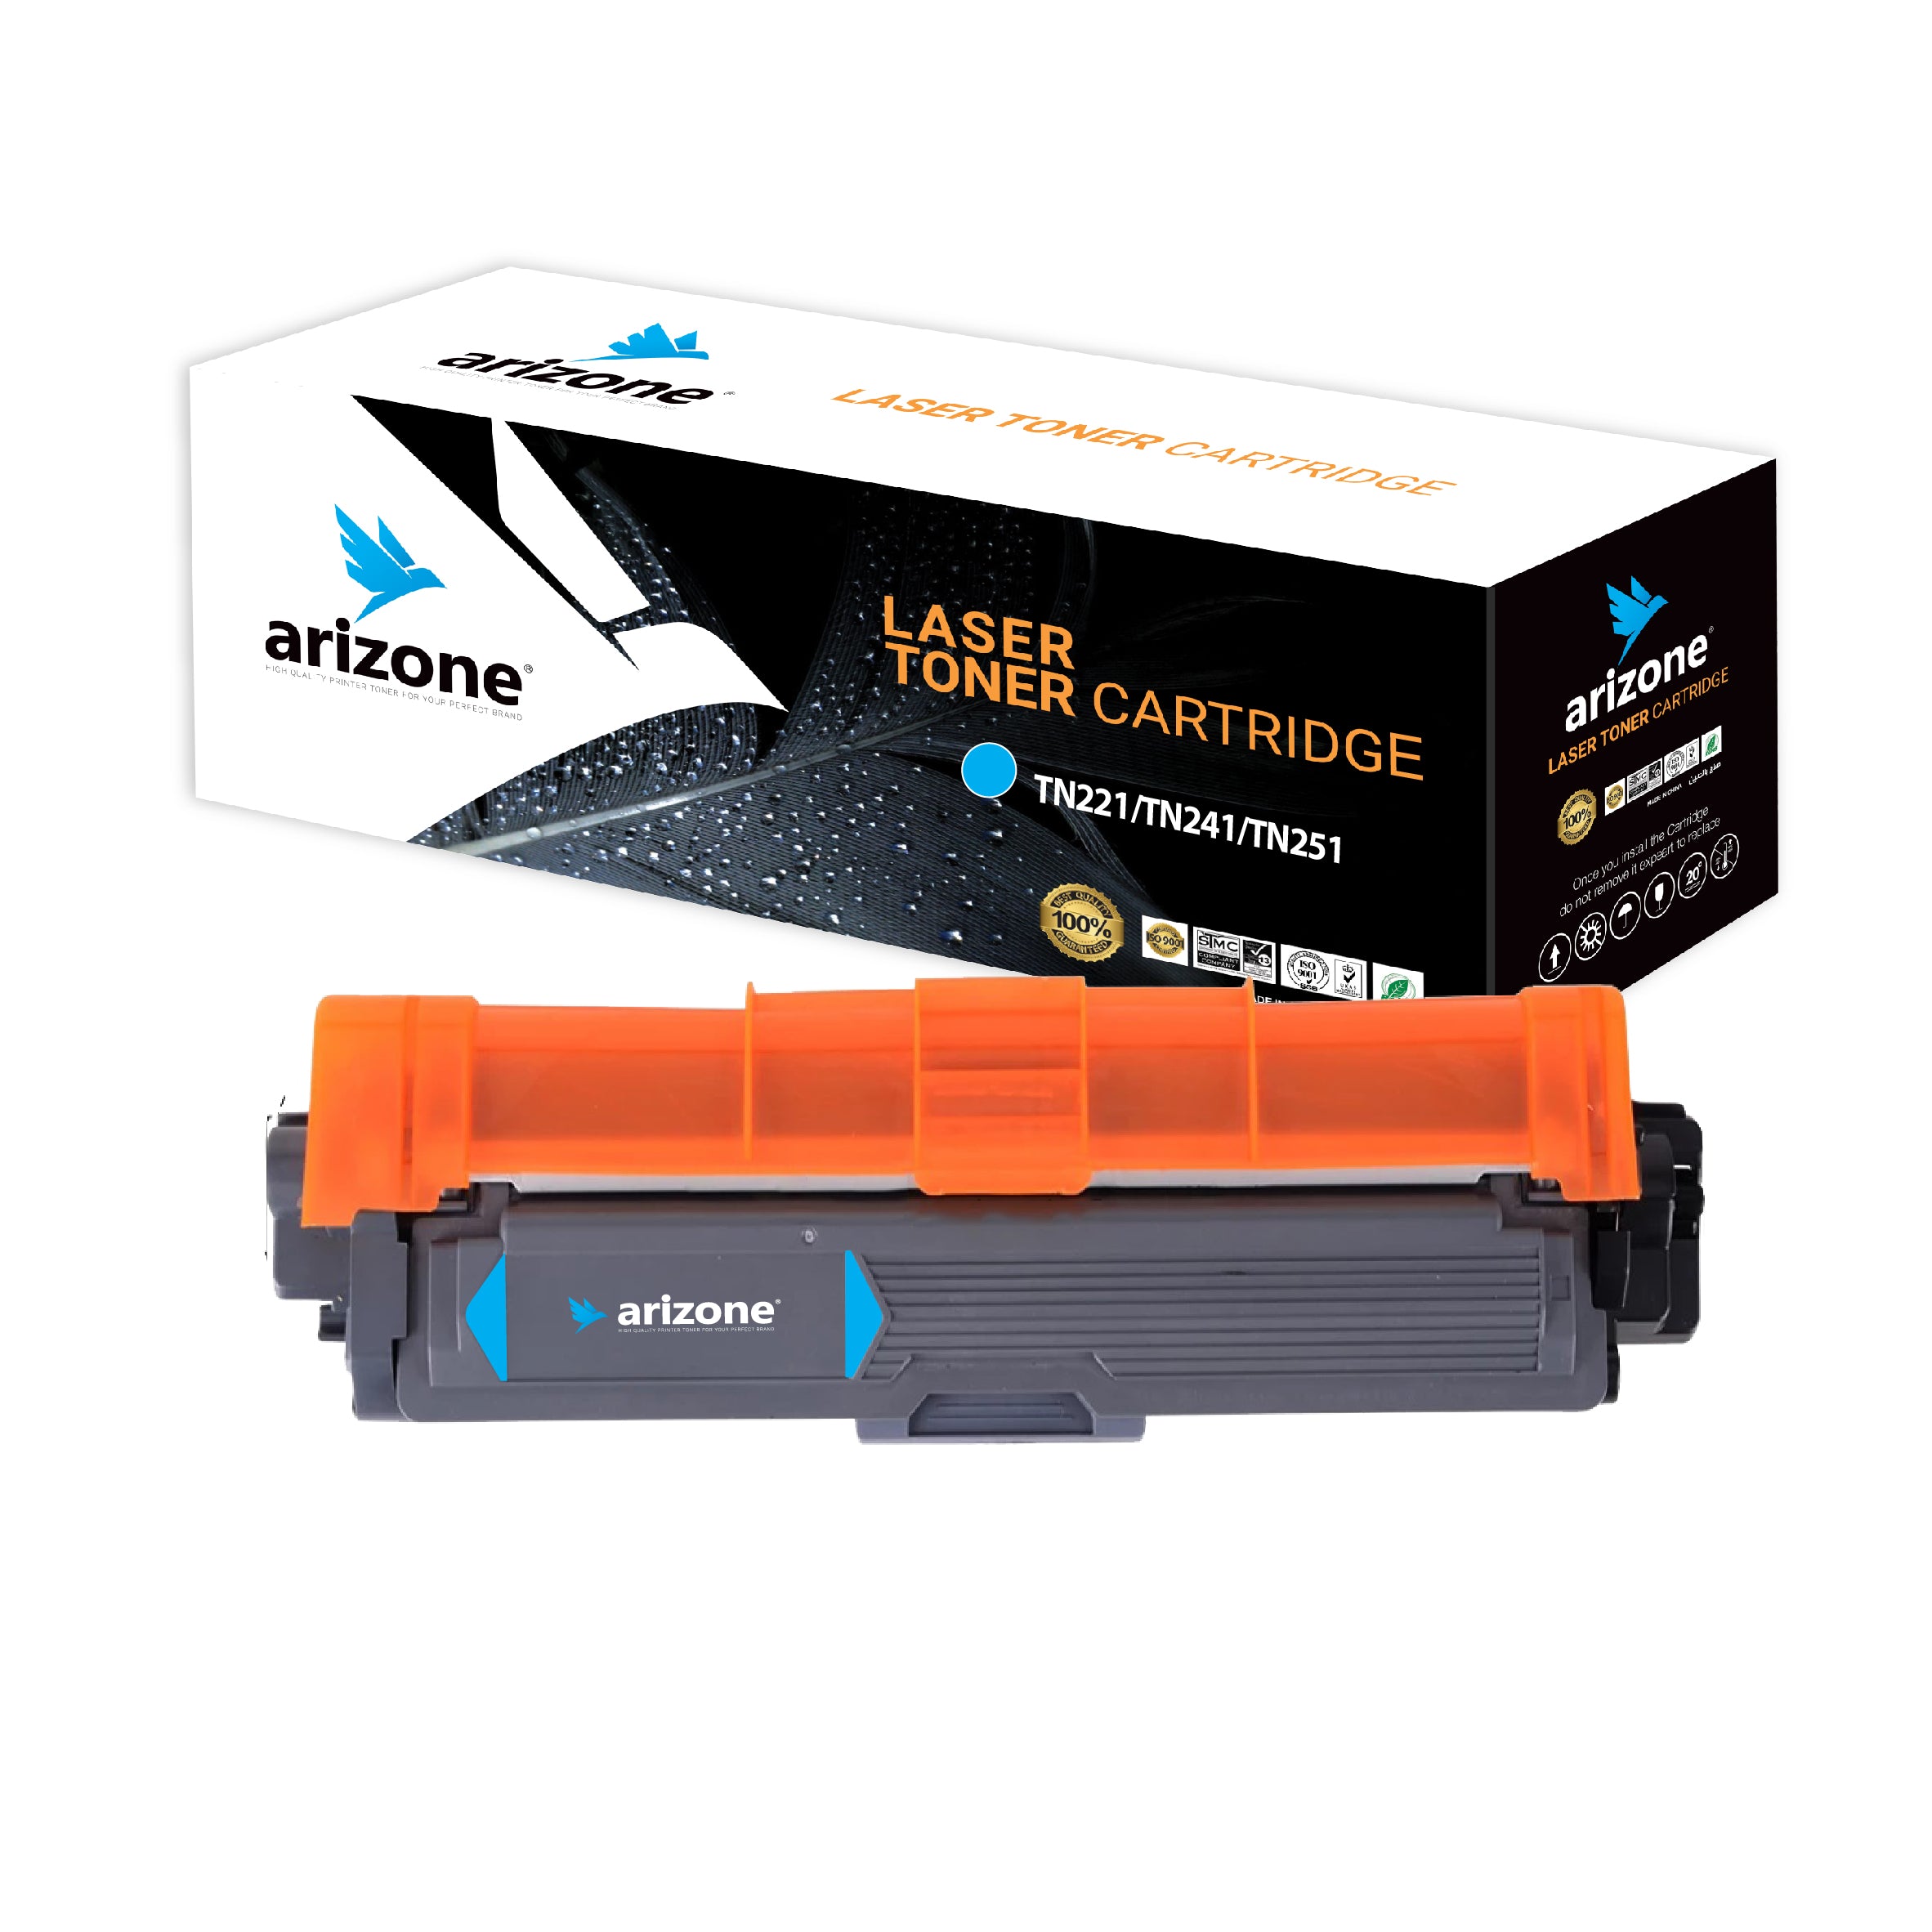 Arizone Toner Cartridges TN221/TN241/TN242/TN251/TN261/TN281 Cyan